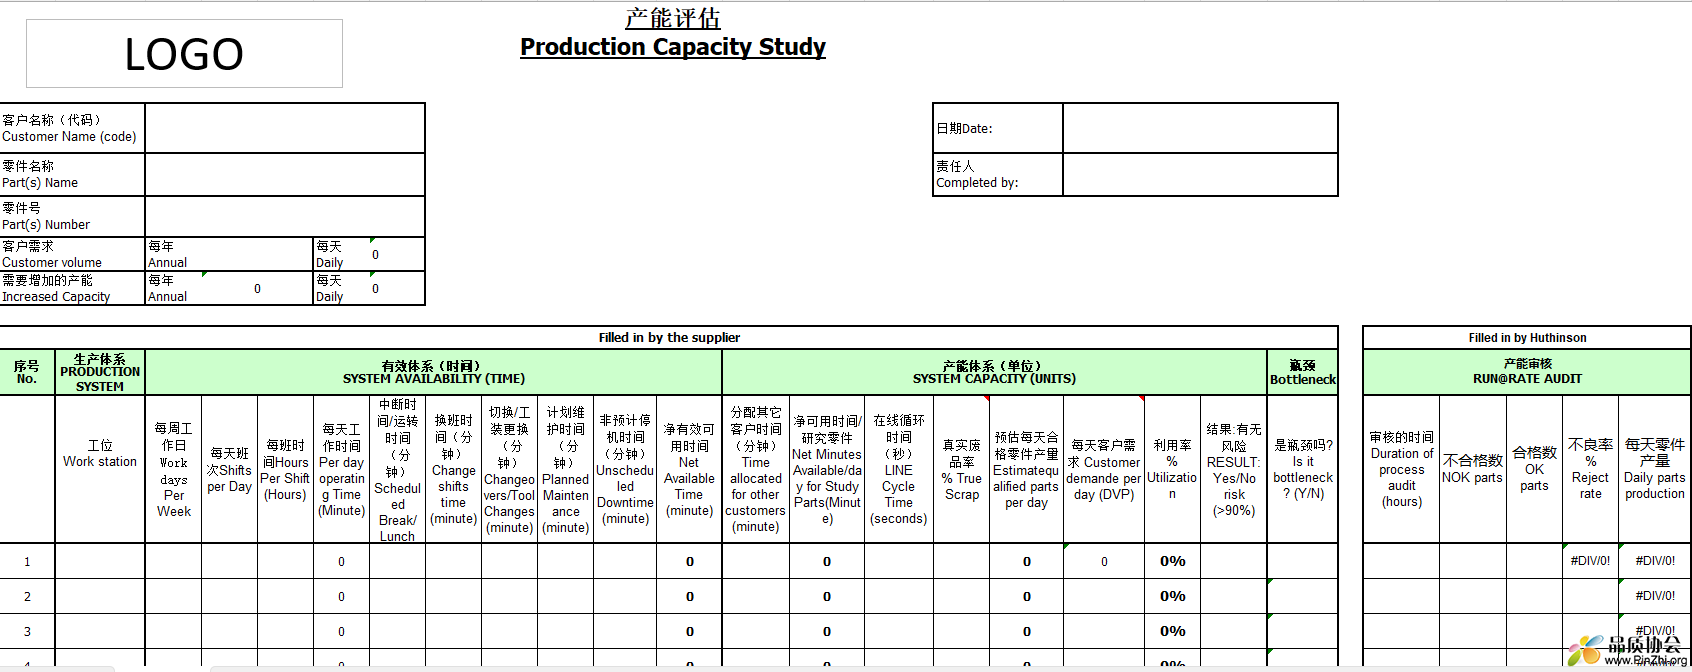 产能评估 Production Capacity Study